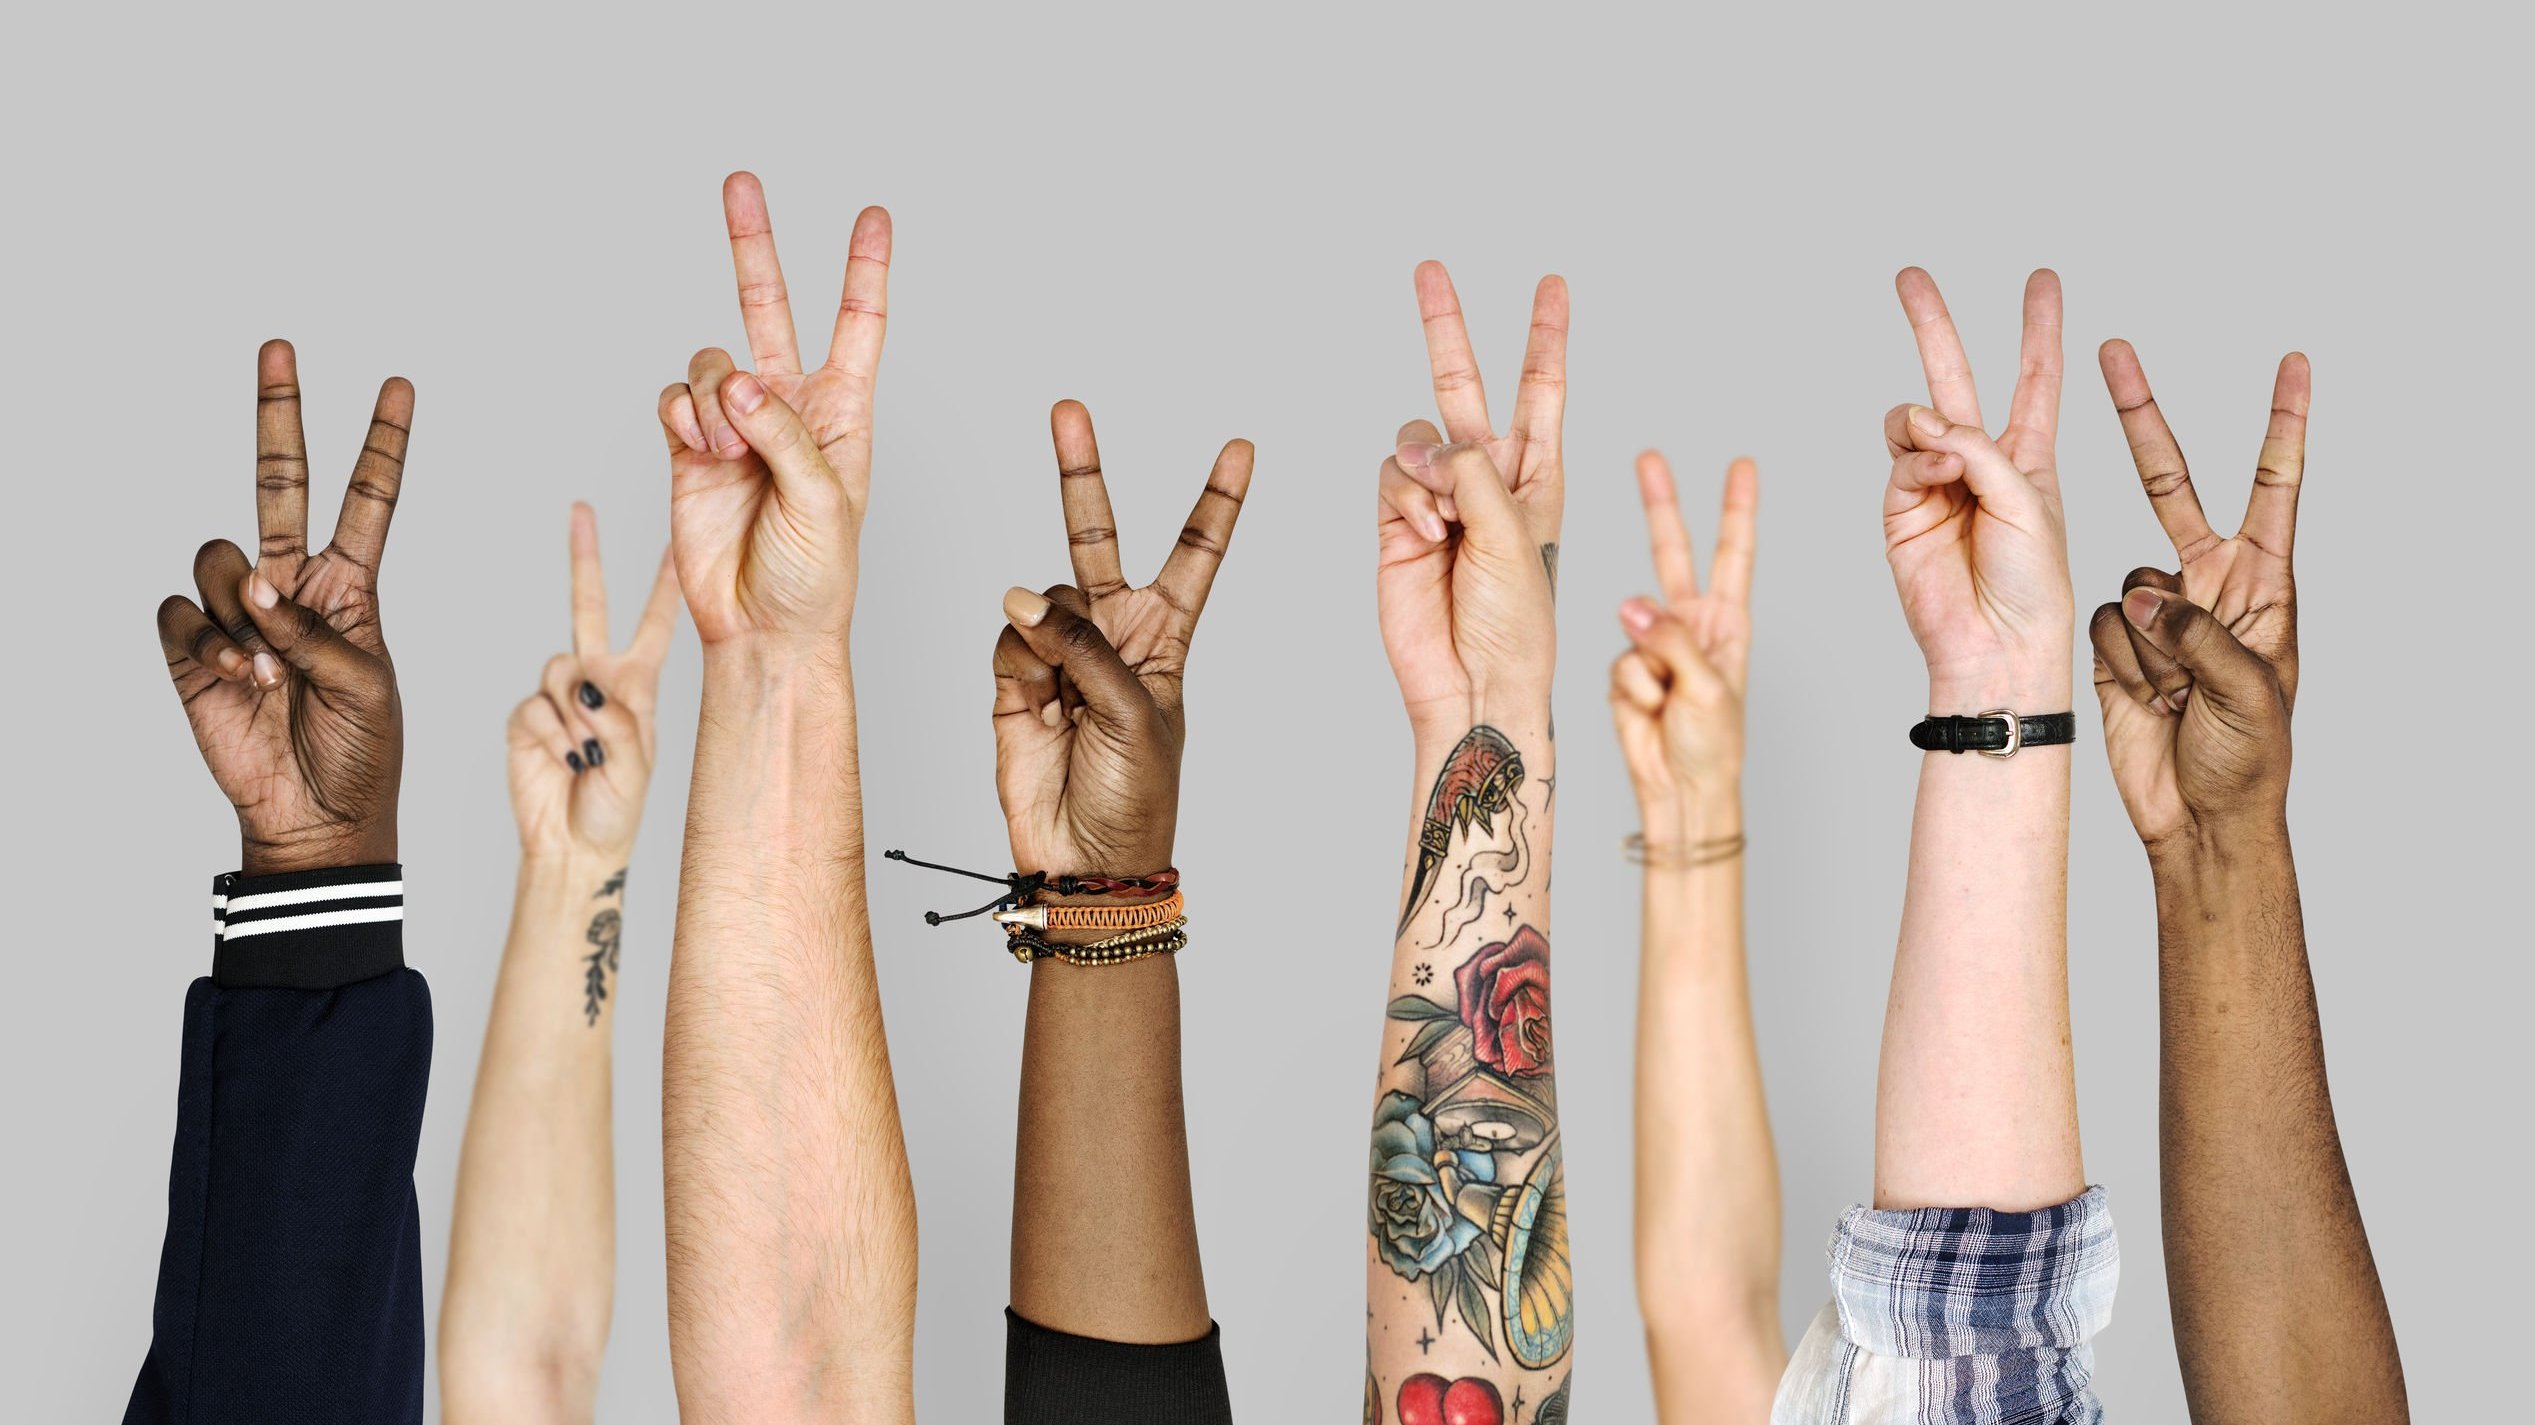 Braços de diversas pessoas levantados com os dedos formando o símbolo de paz e amor